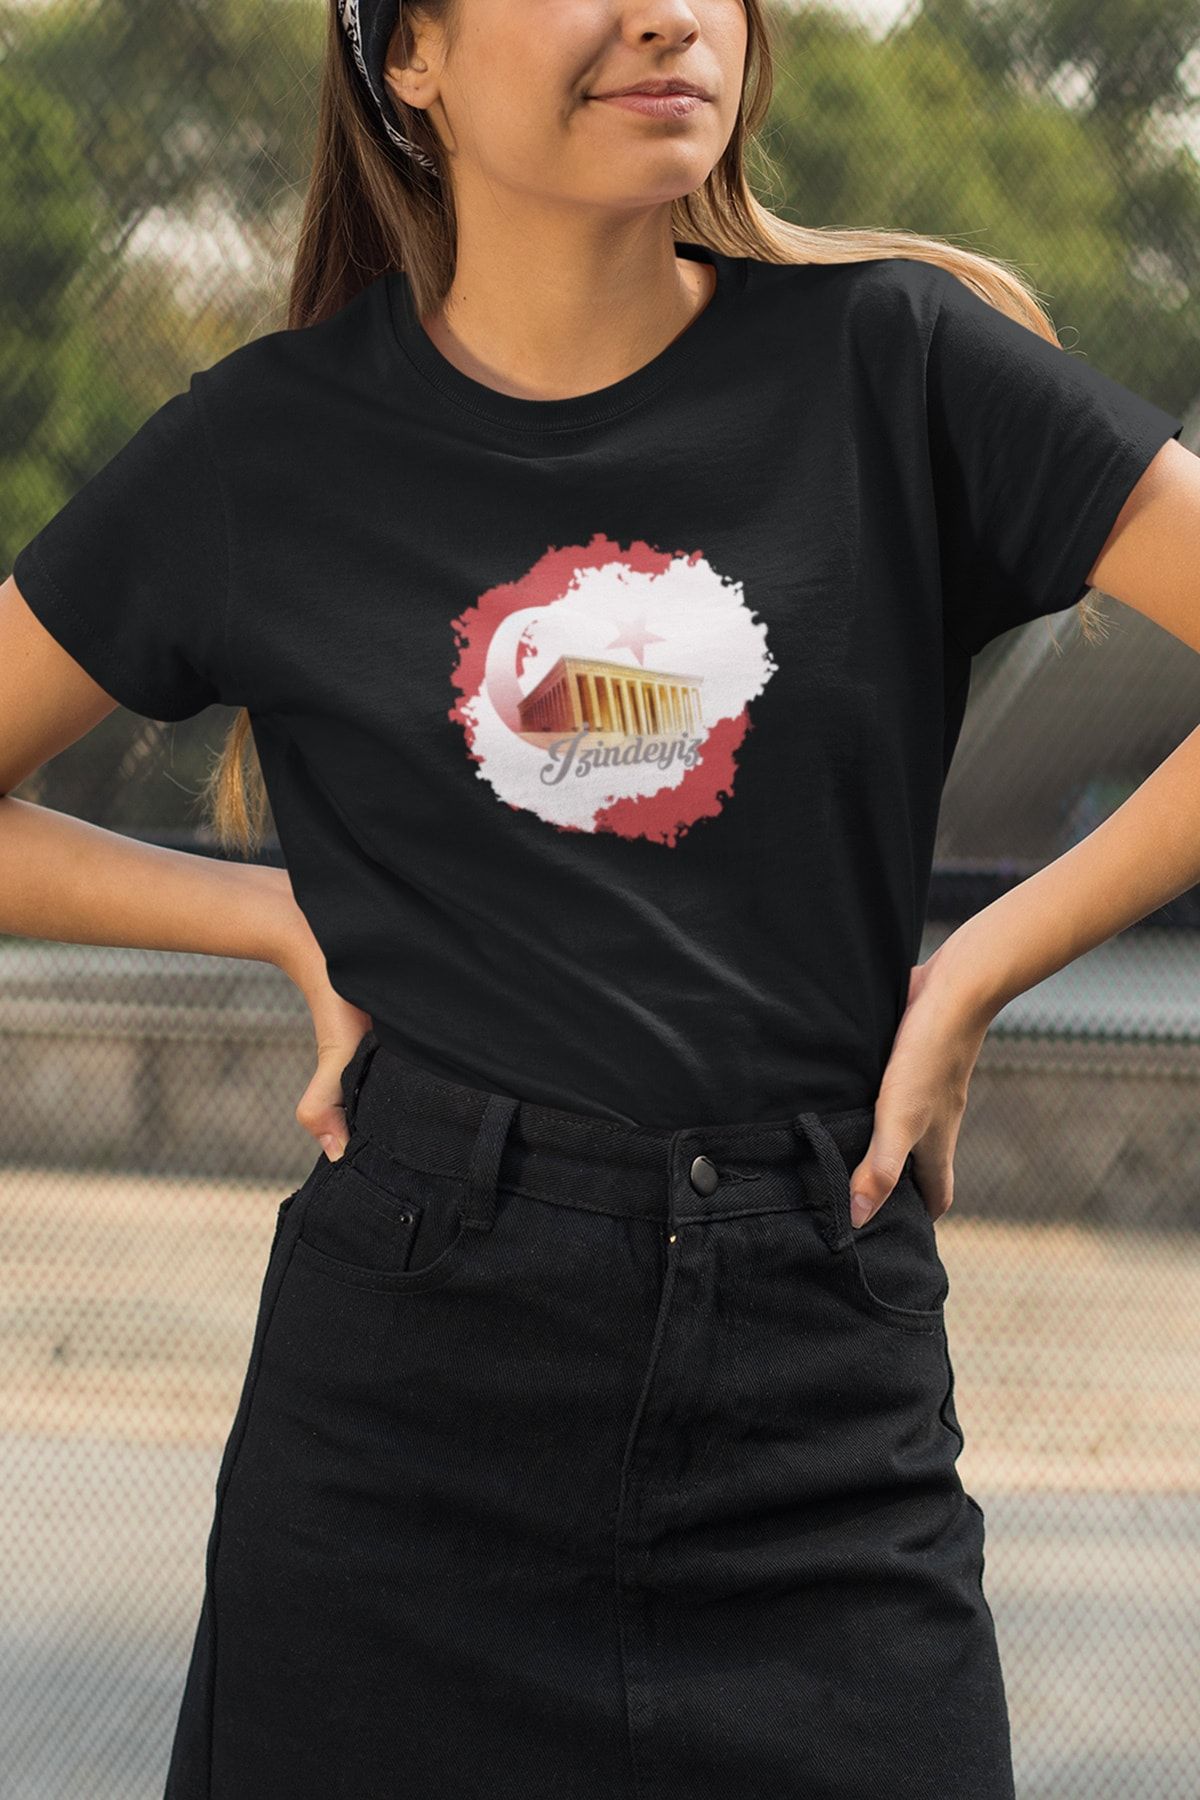 Kio Tasarım Atatürk Serisi Tişört Kadın Çocuk Tişörtü Arkadaşa Sevgiliye Hediye Doğum Günü Hediyesi T-shirt